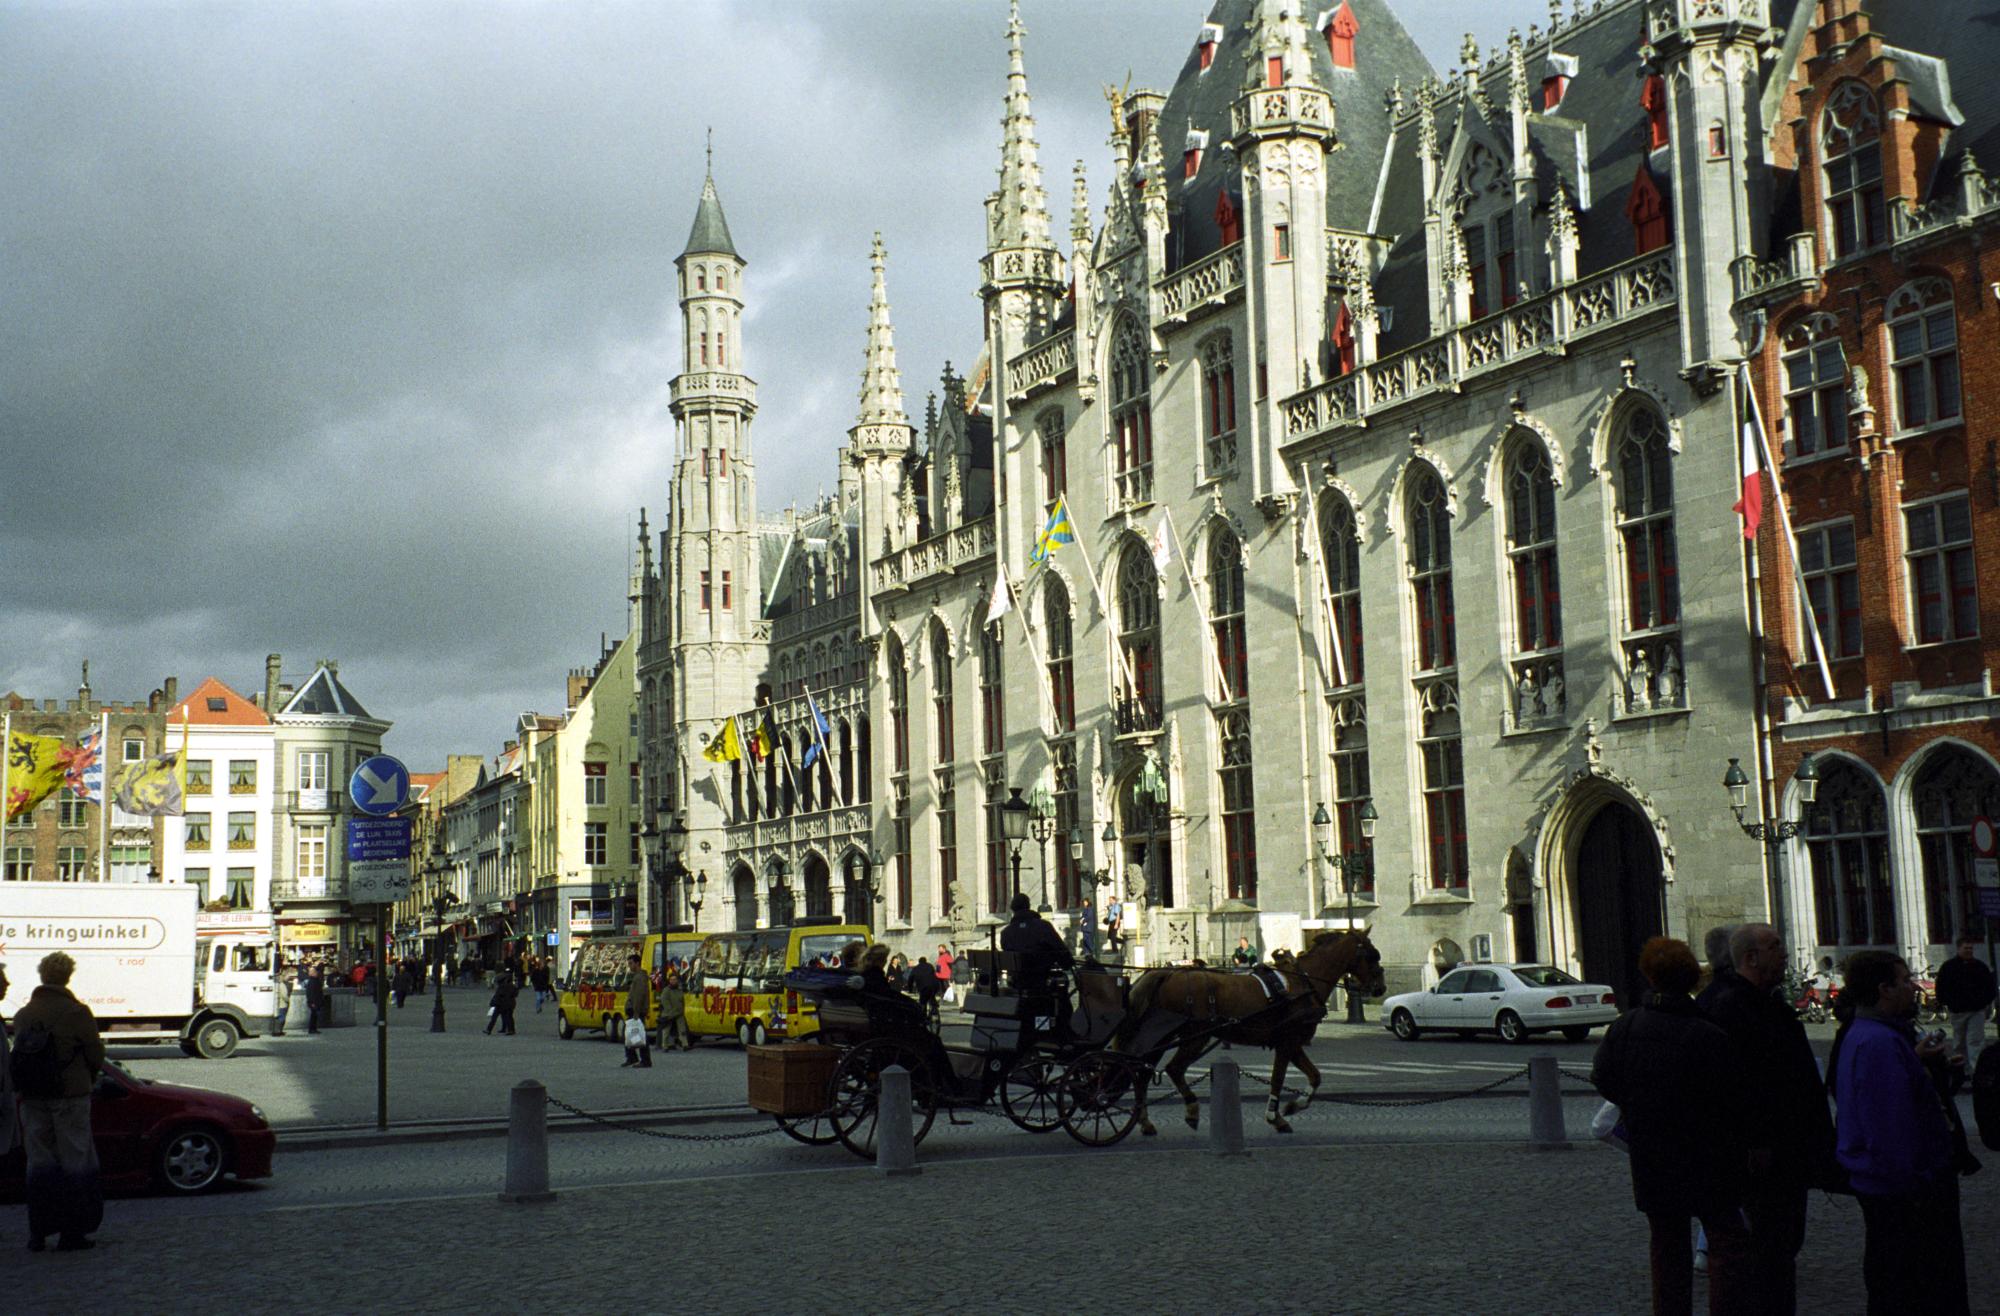 The Netherlands - Brugge